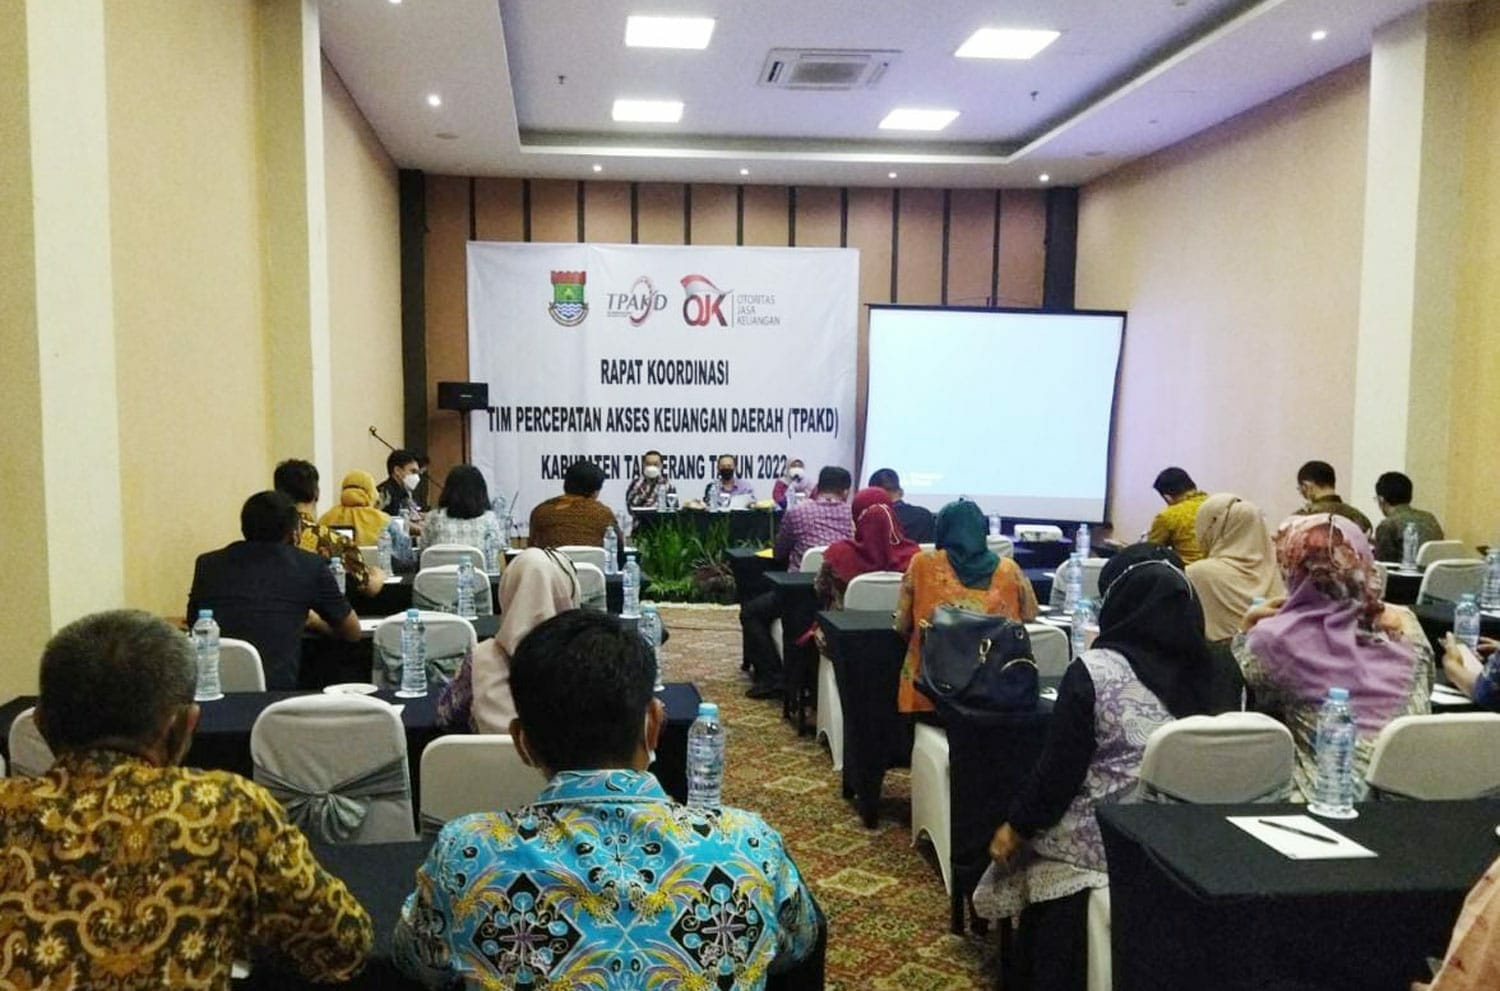 TPAKD Kabupaten Tangerang Gelar Rakor Bersama OJK